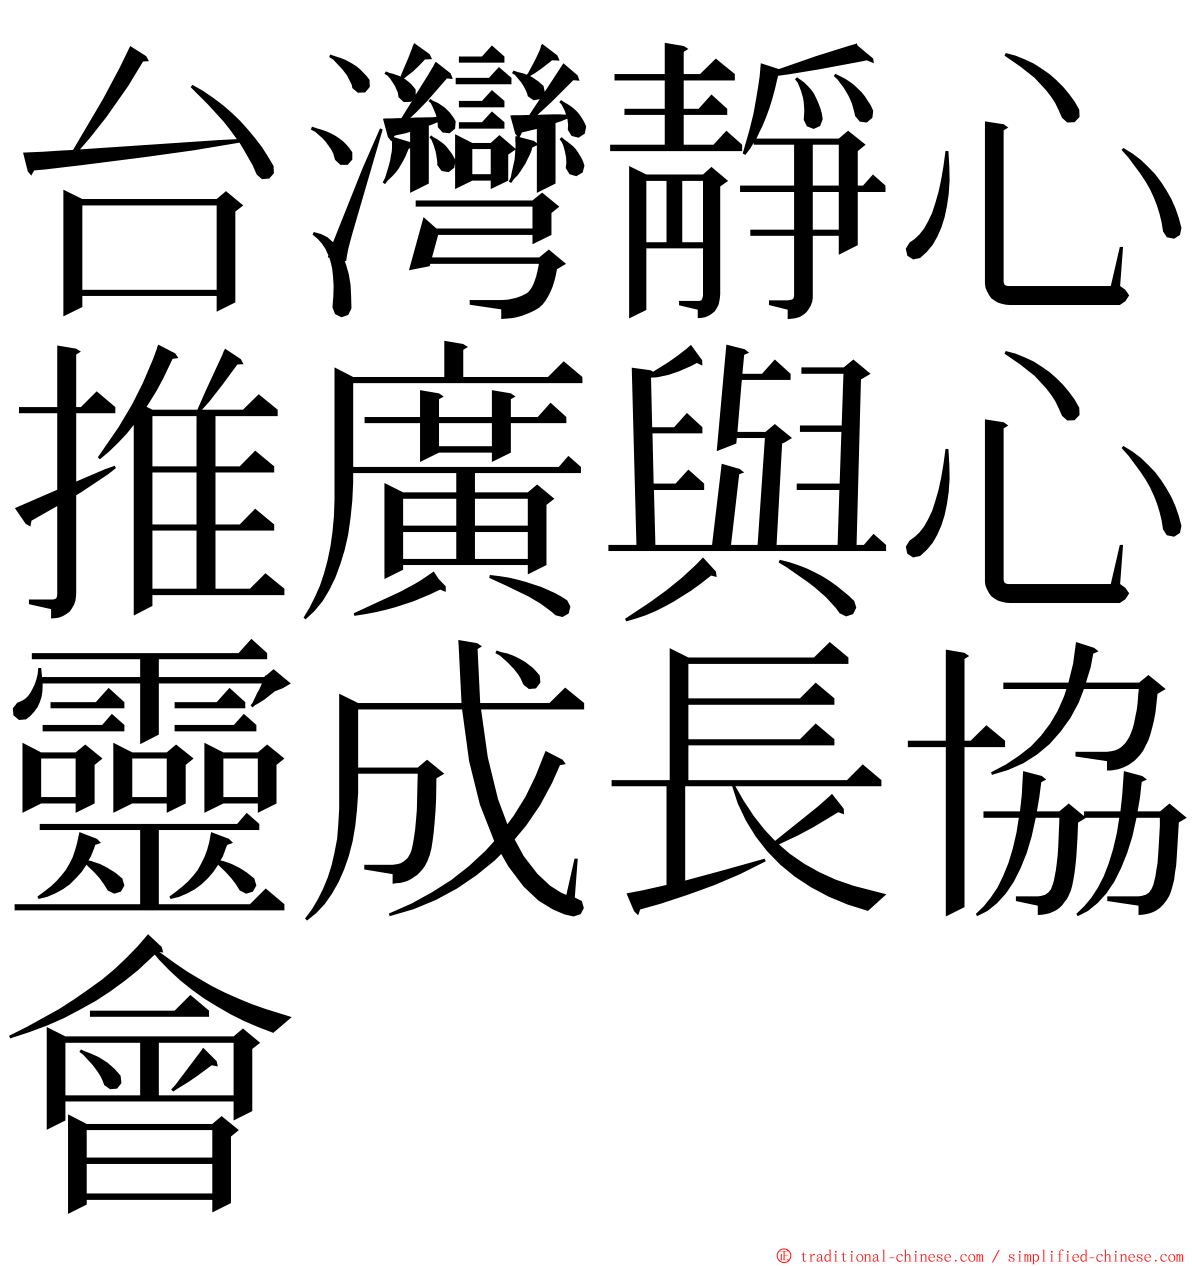 台灣靜心推廣與心靈成長協會 ming font